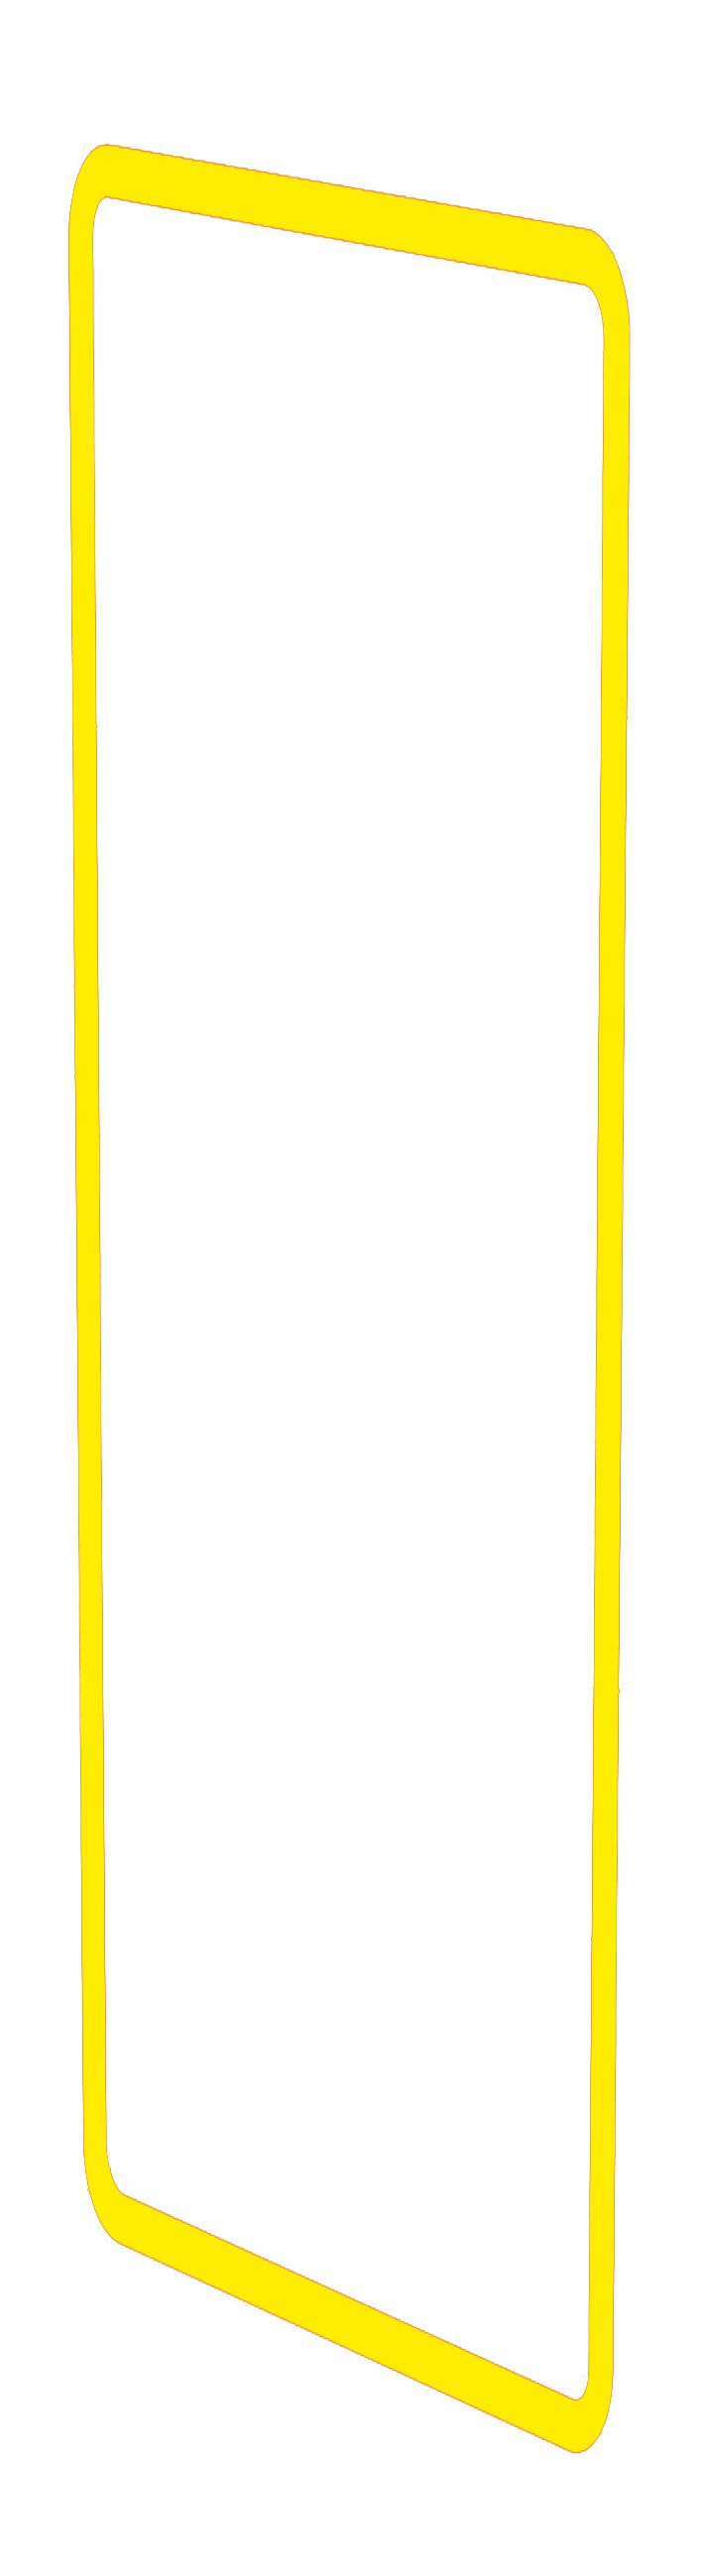 profil décoratif ta.4x1 priamos jaune